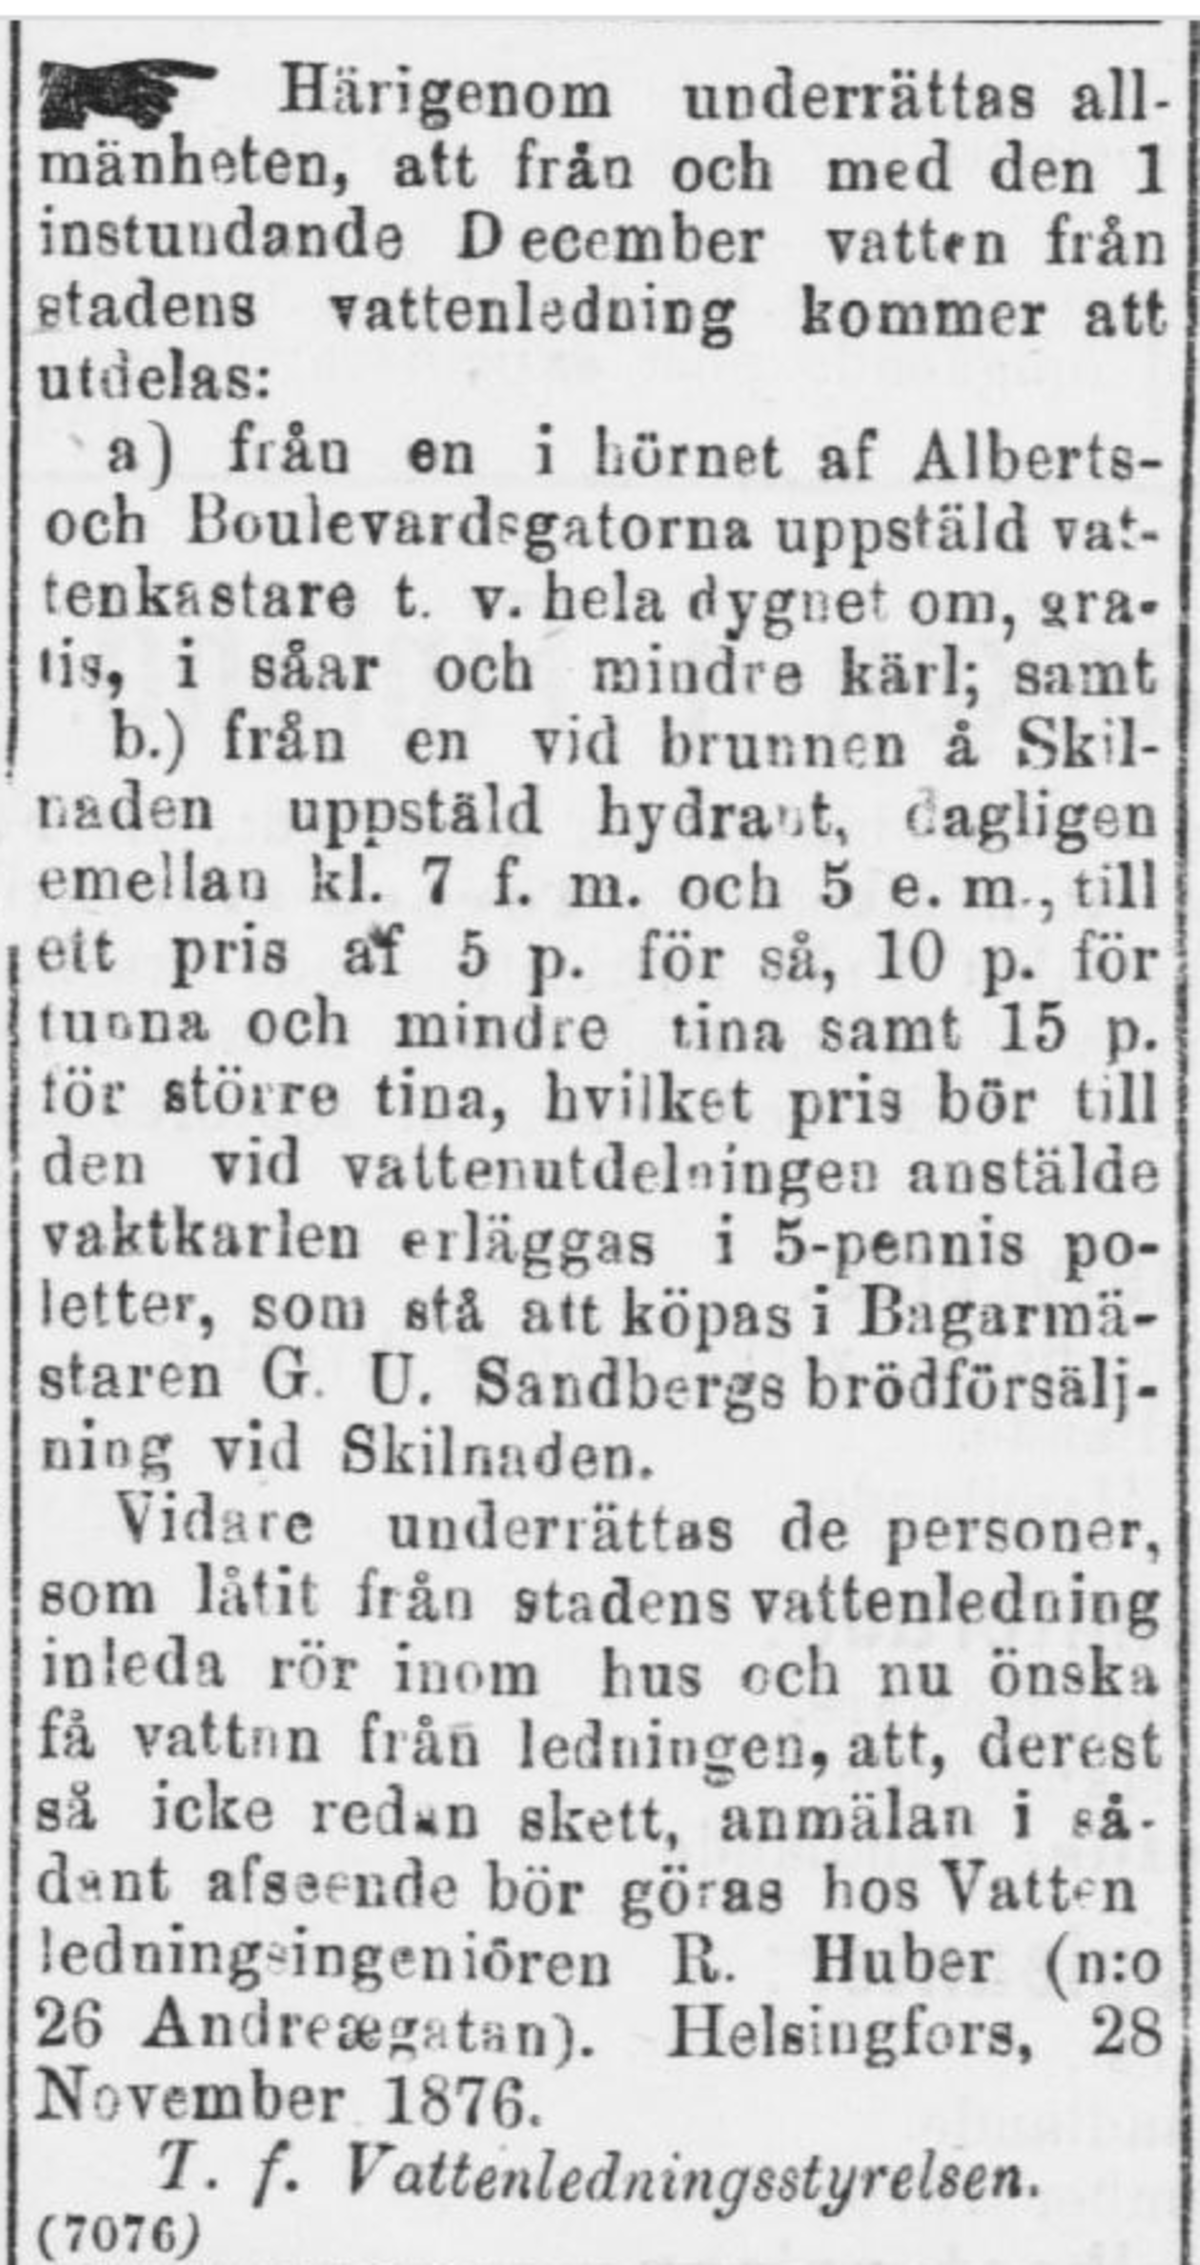 Helsingfors Dagblad 1.12.1876 upplyser om vattendelning från den nyss öppnade ledningen. Foto: Nationalbiblioteket